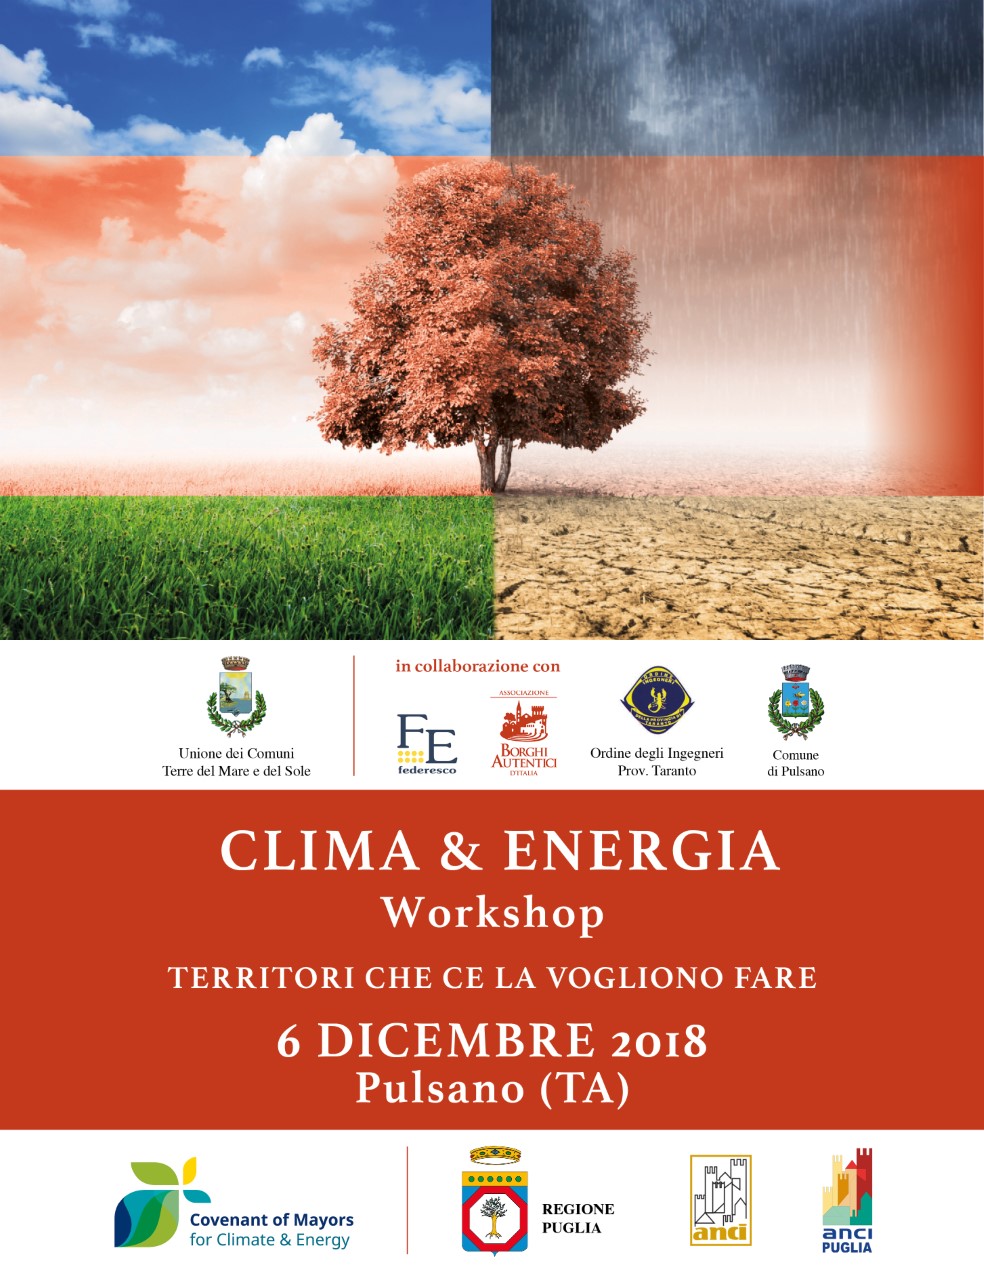 Clima e energia, workshop dell’Unione dei Comuni a Pulsano